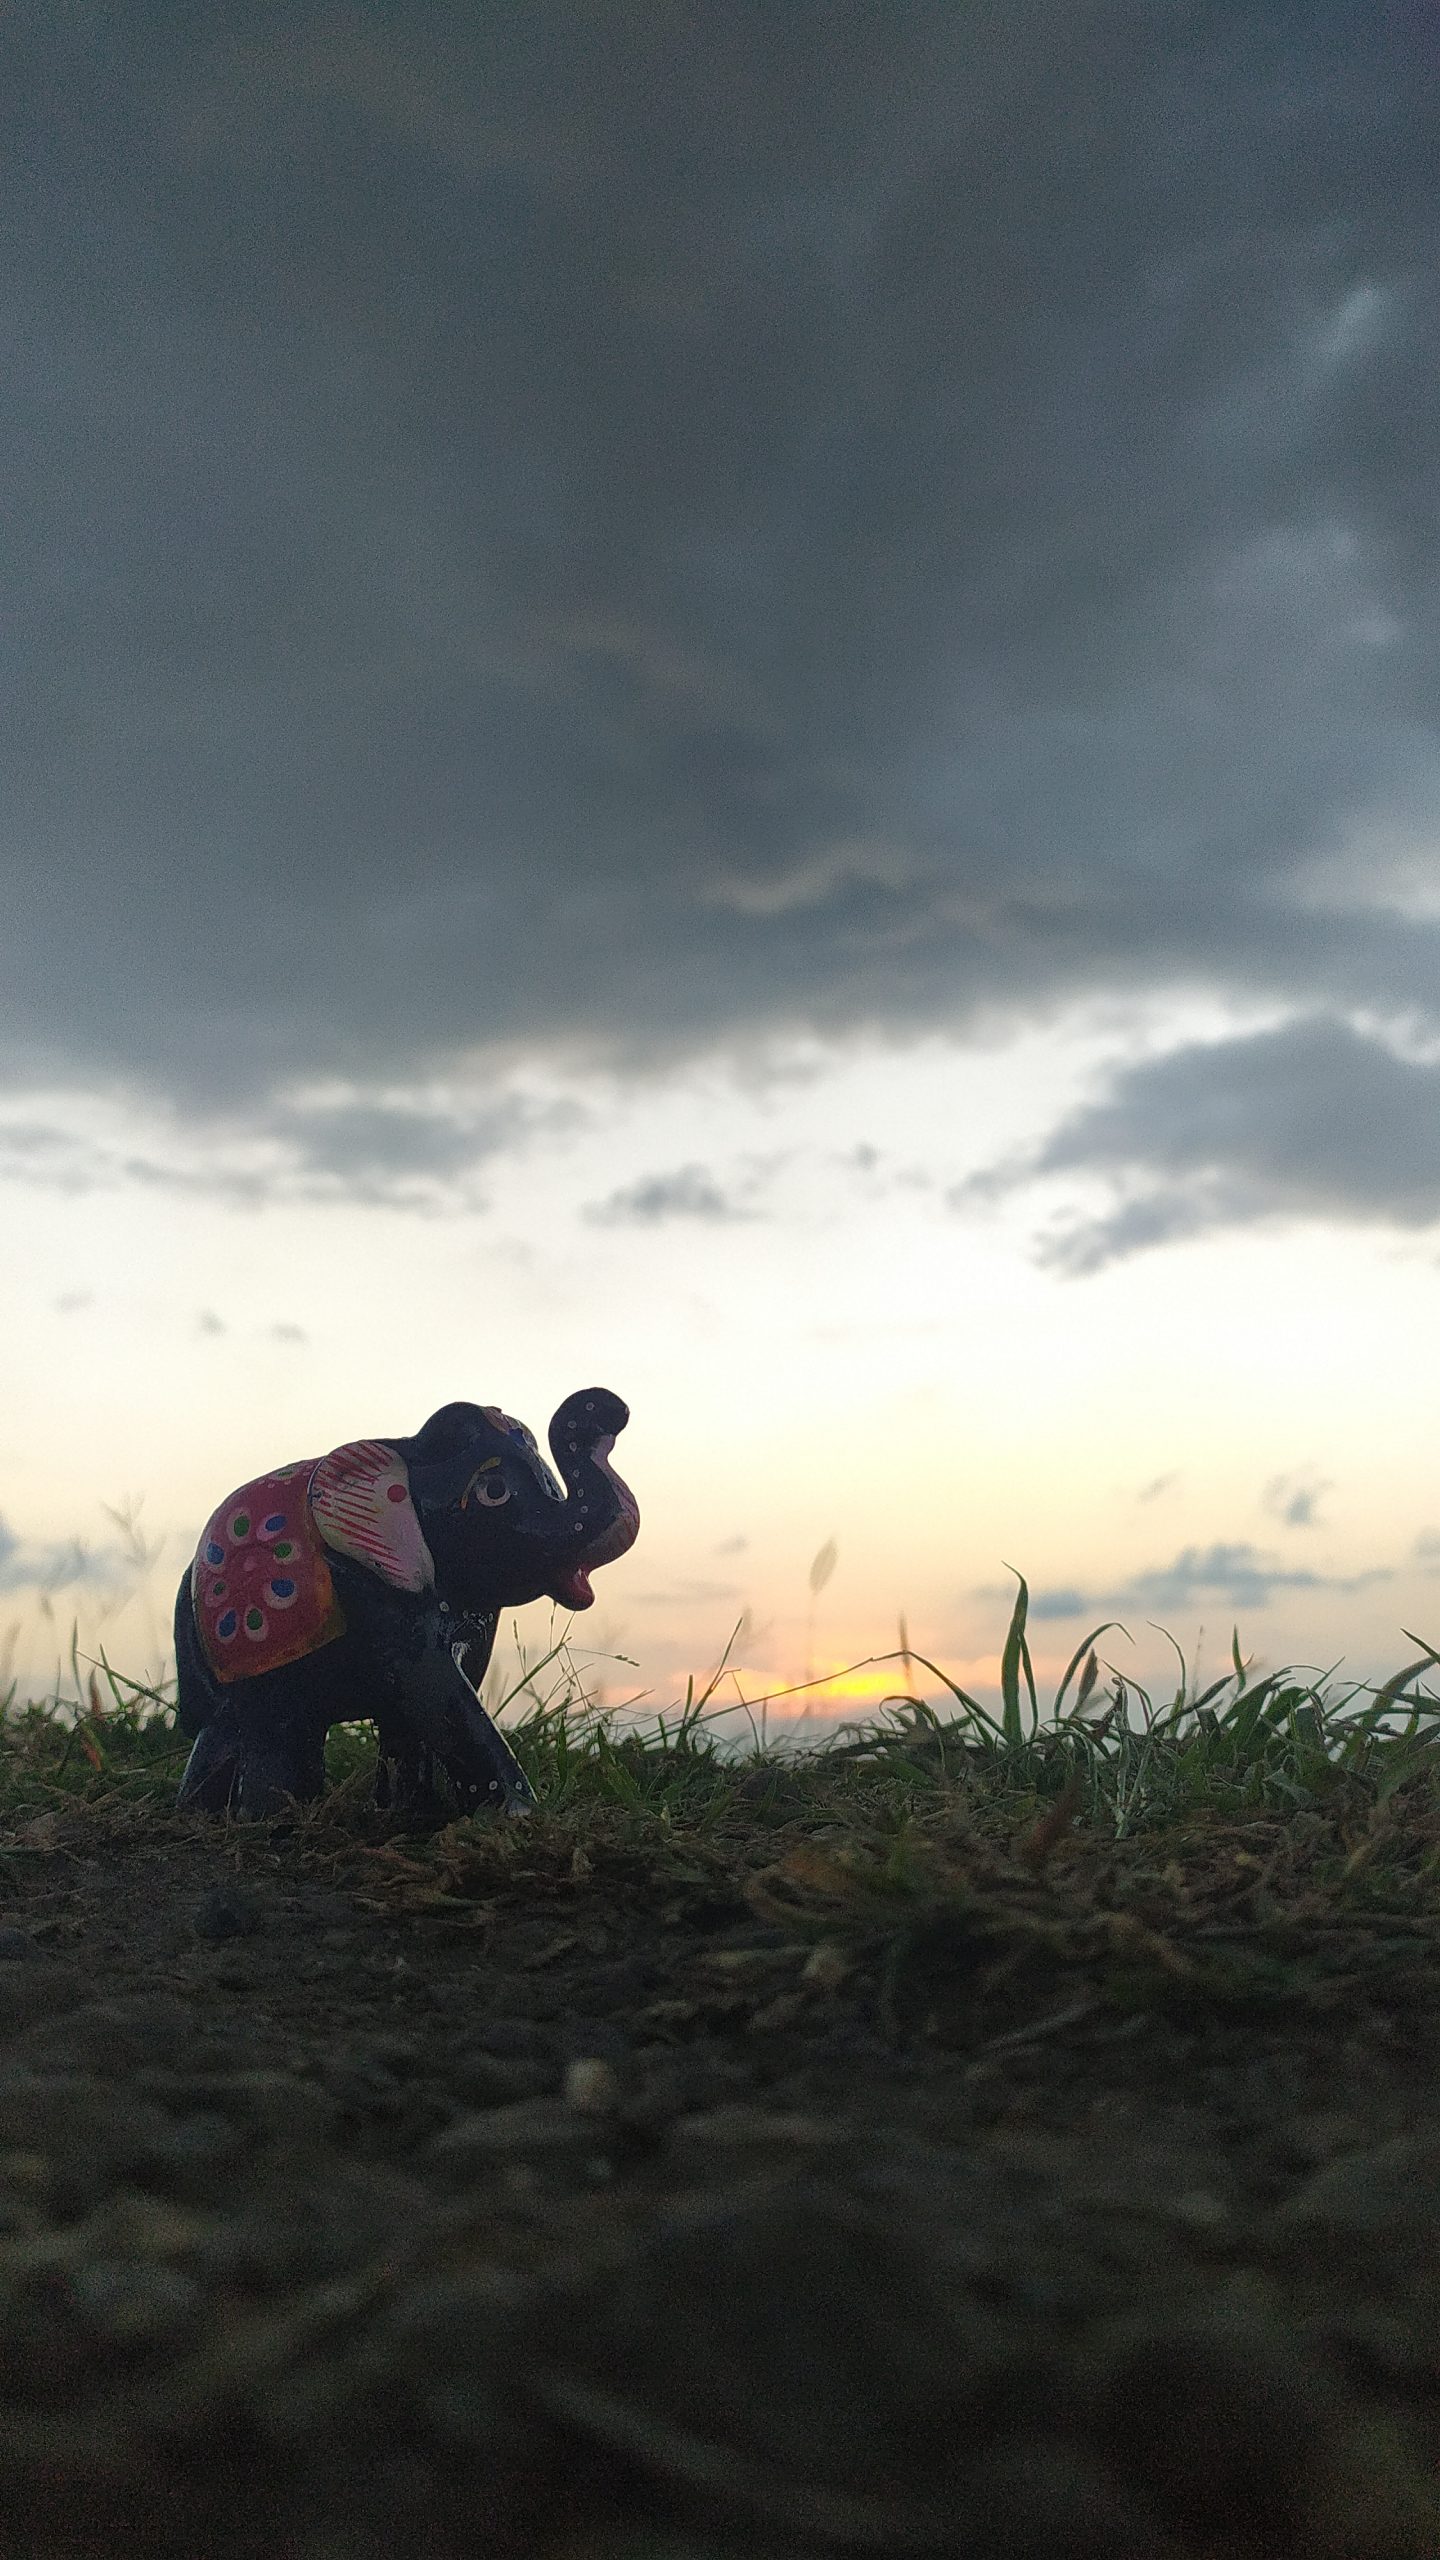 An elephant under a cloudy sunset.